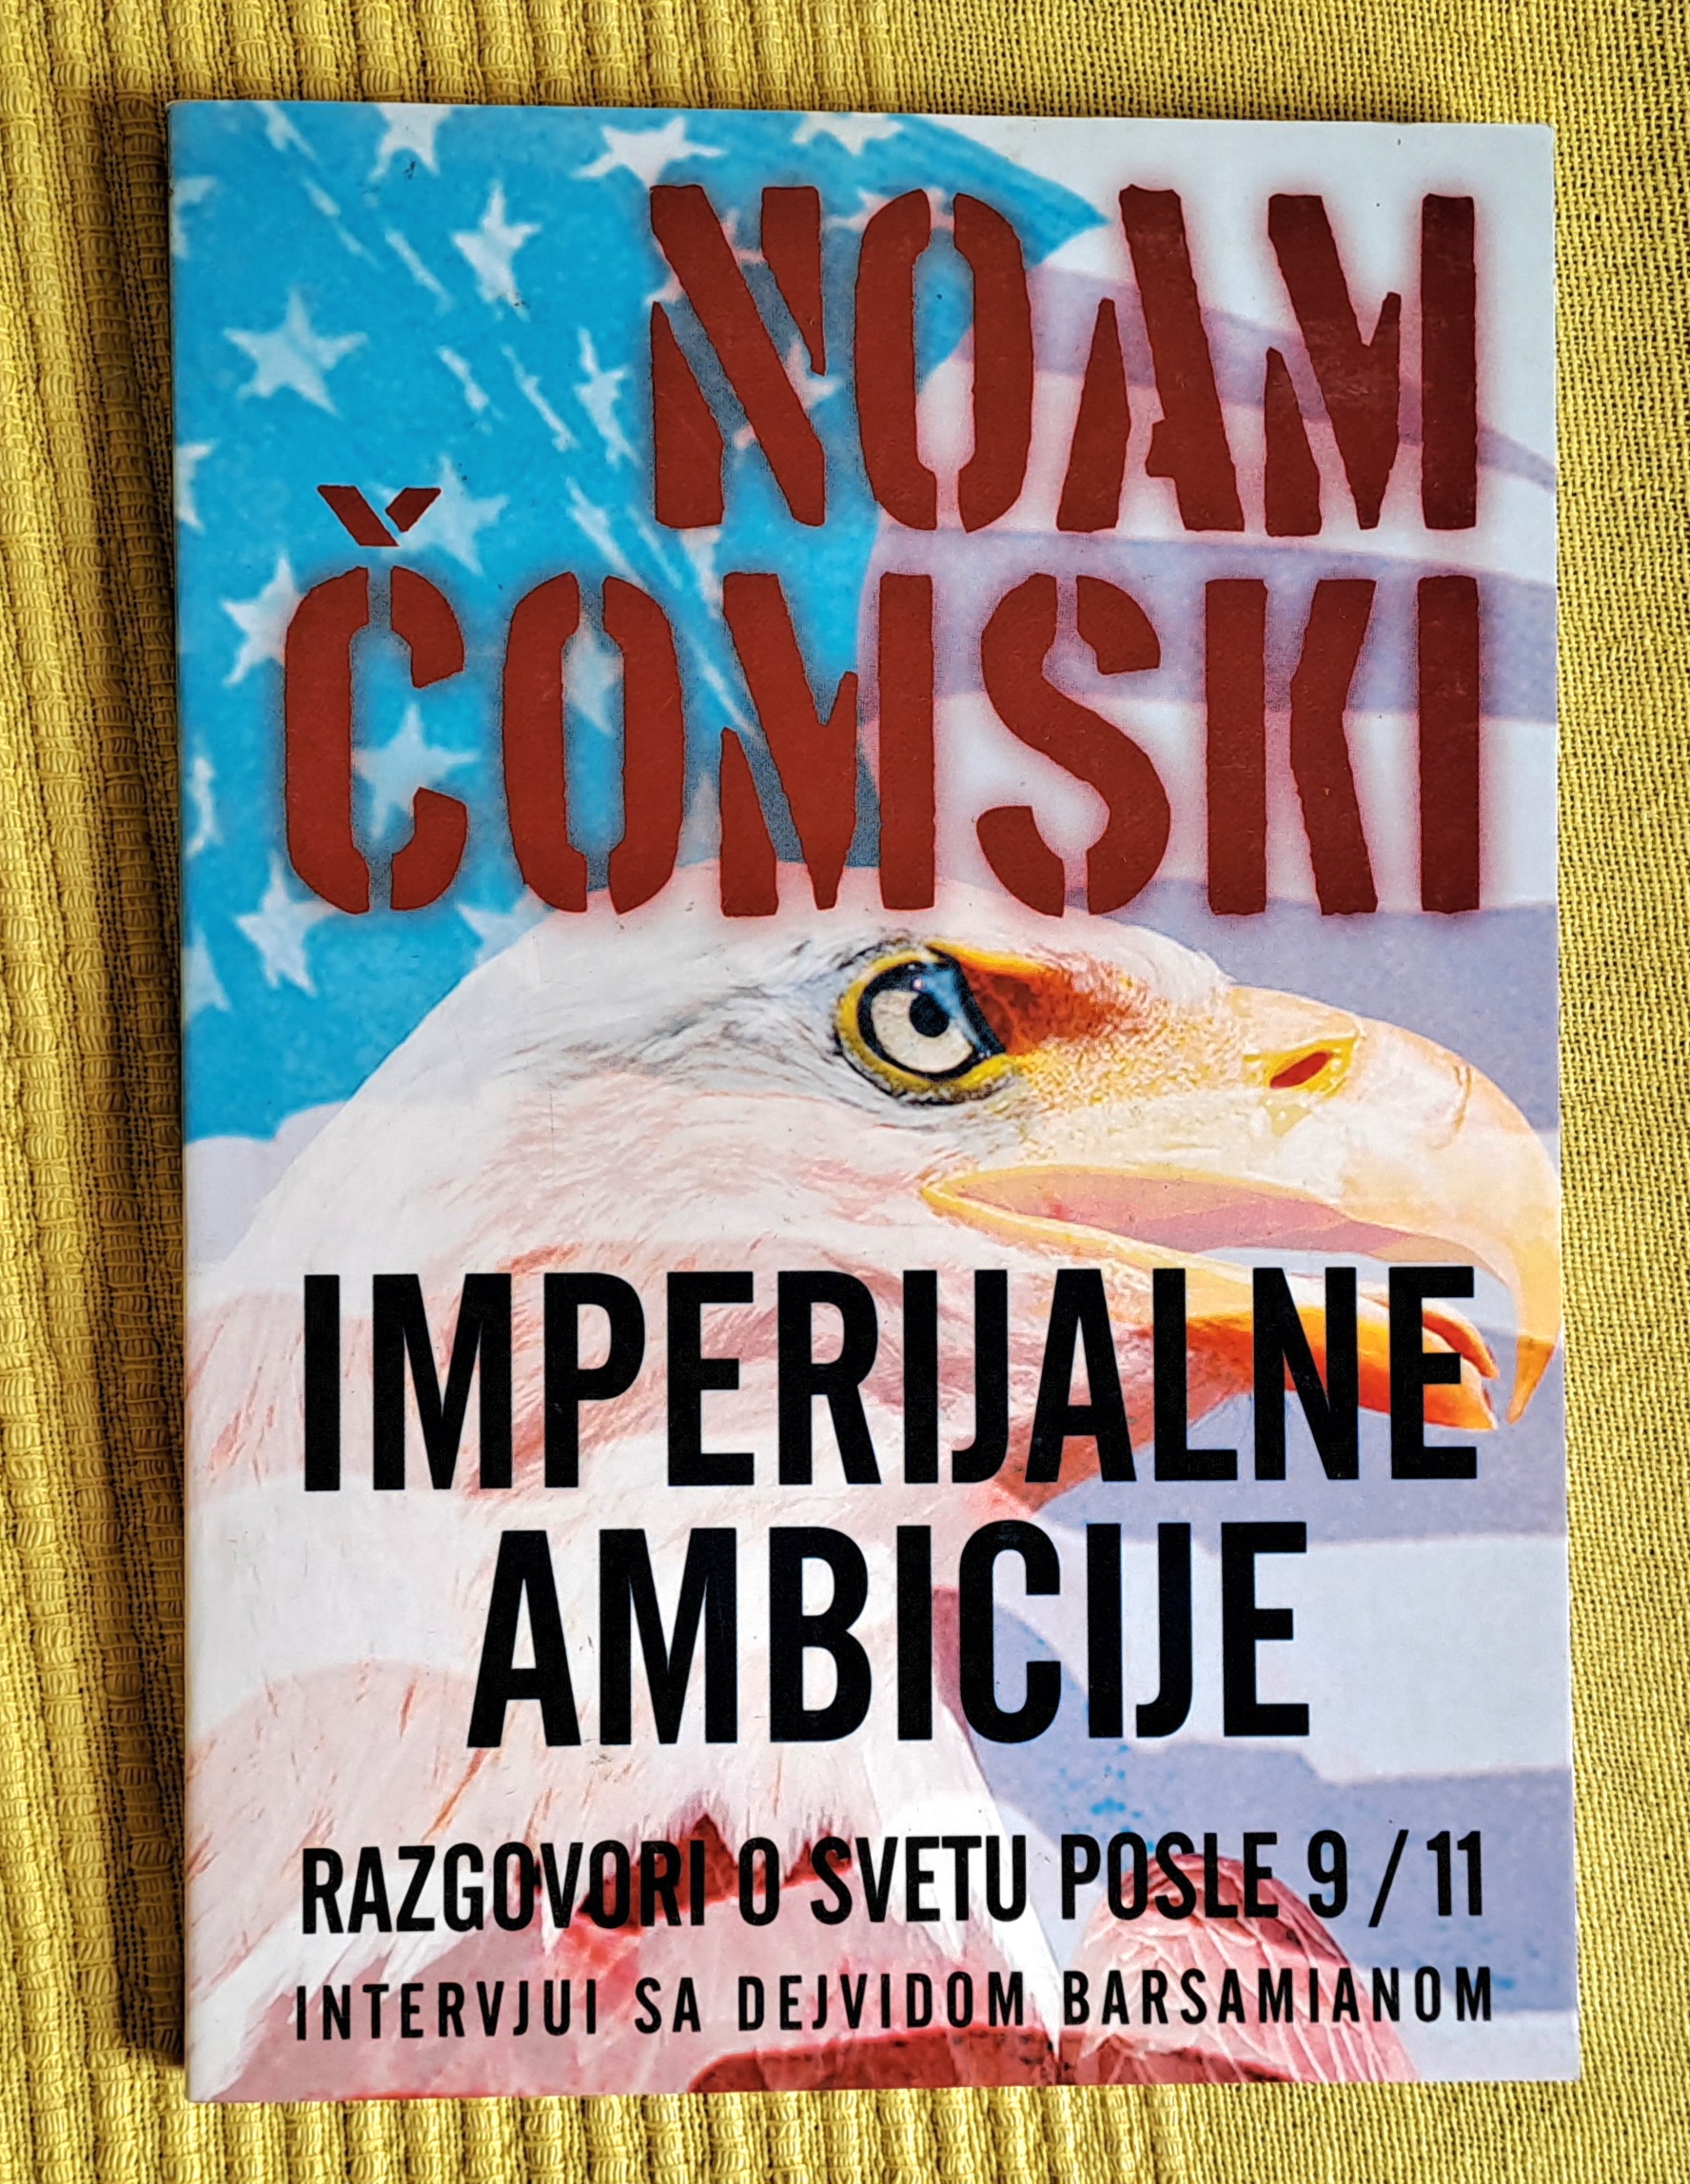 Imperijalne ambicije  Noam Čomski